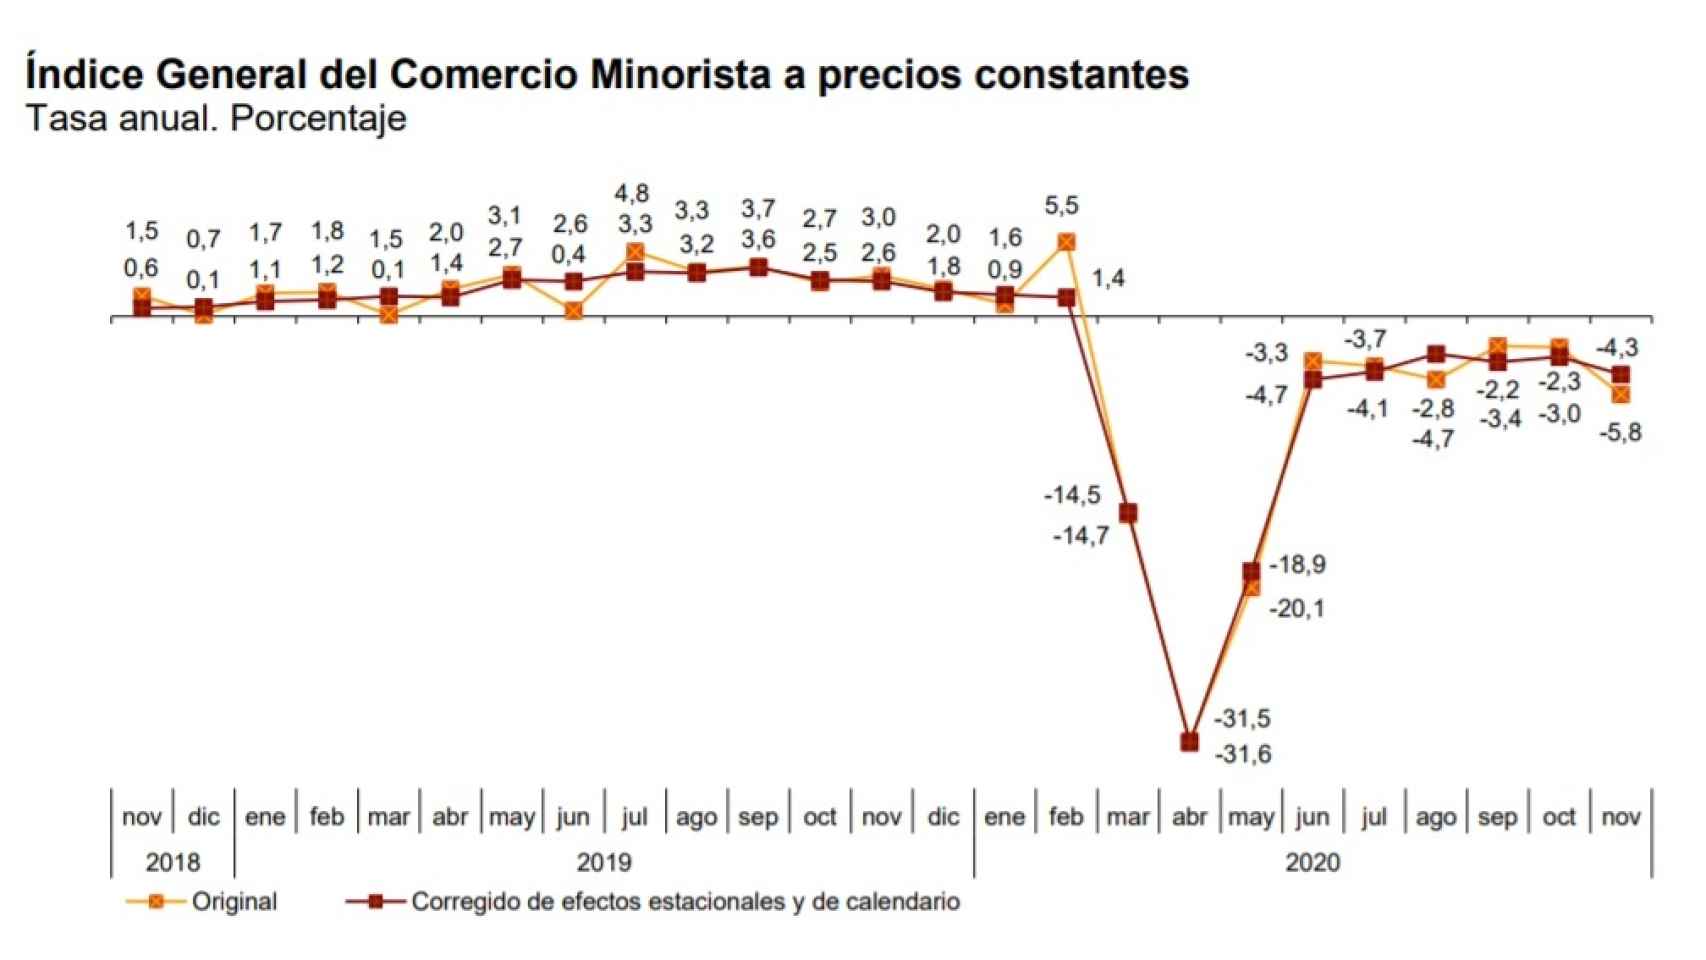 Tasa anual del Índice General del Comercio Minorista a precios constantes. Fuente: INE